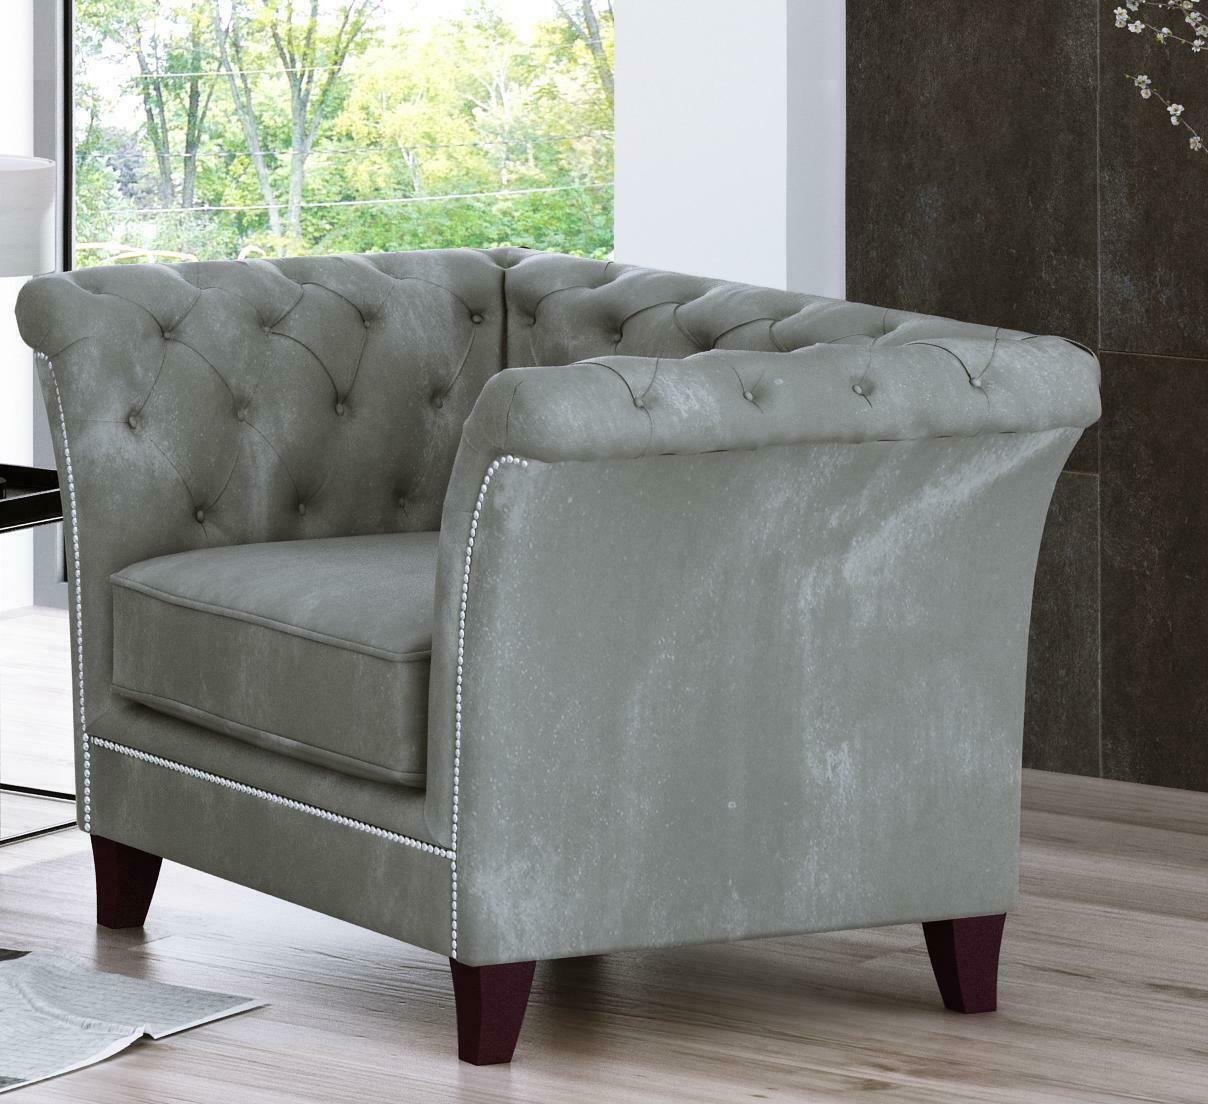 JVmoebel Sessel, Chesterfield Sessel Couch Polster 1 Sitzer Samt Design Couchen Sofas Textil Neu von JVmoebel